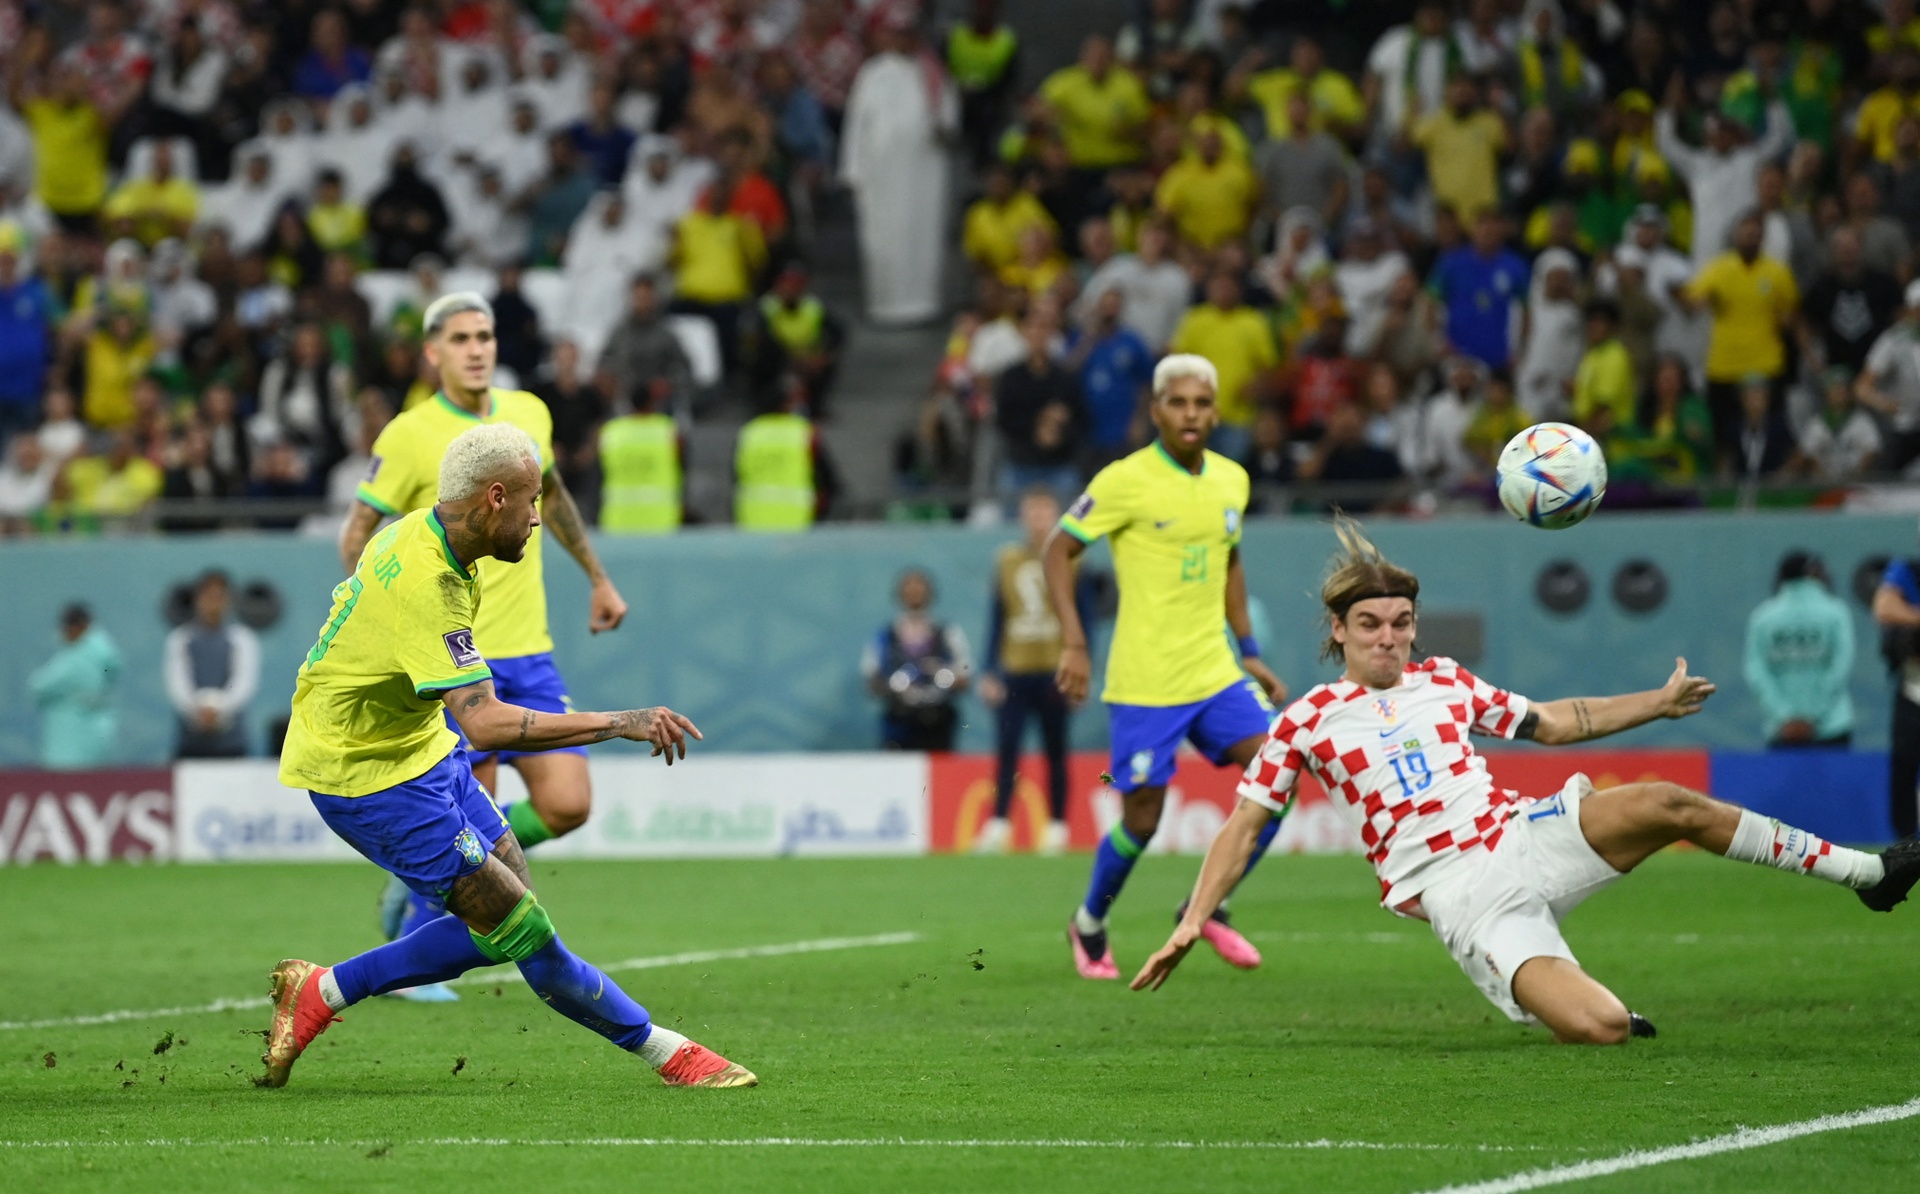 TRỰC TIẾP Croatia 0-1 Brazil (HP2): Neymar ghi bàn - Bóng Đá